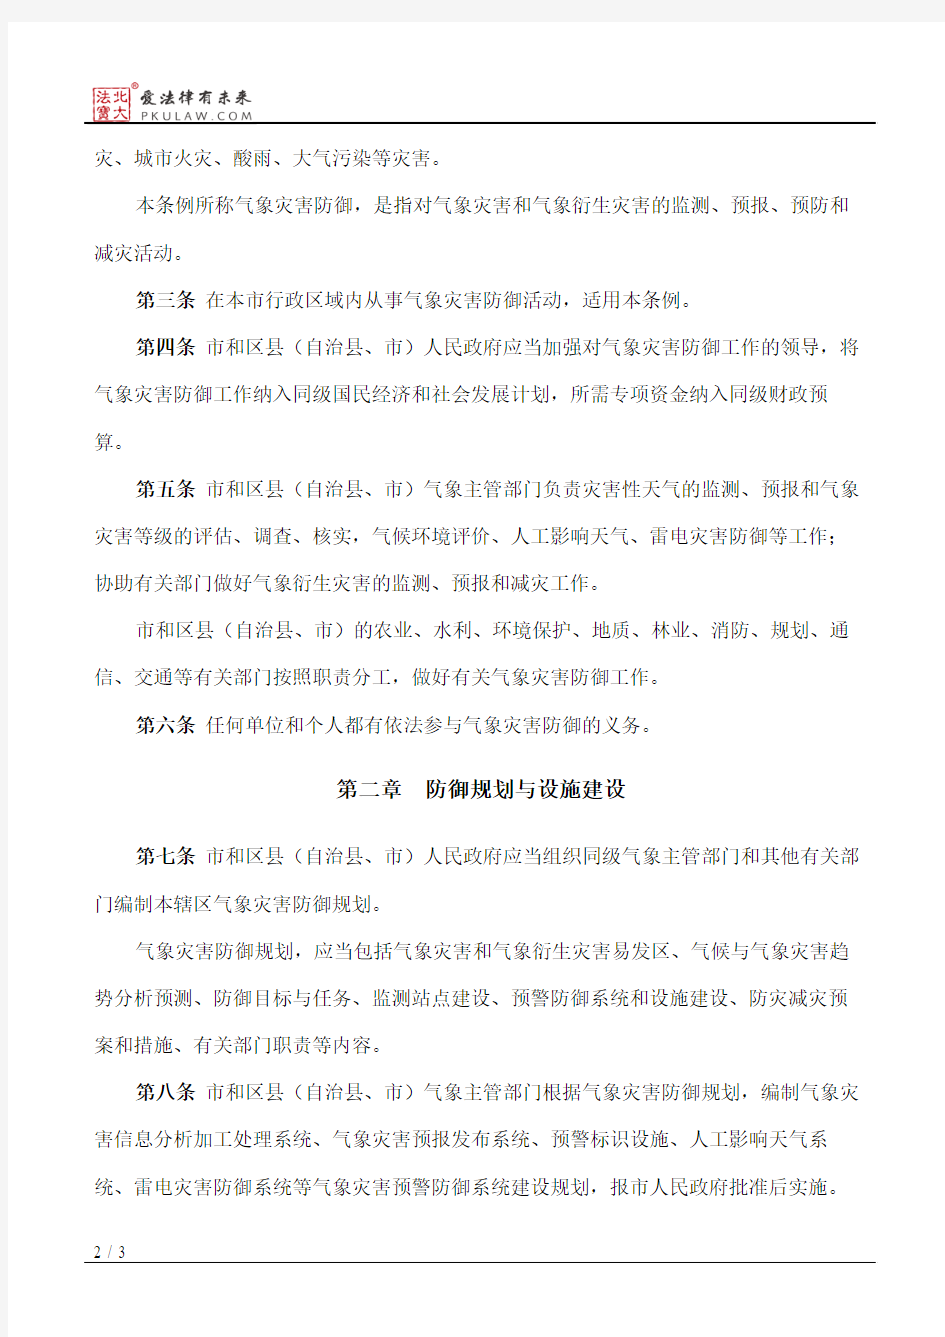 重庆市气象灾害防御条例(2005修正)